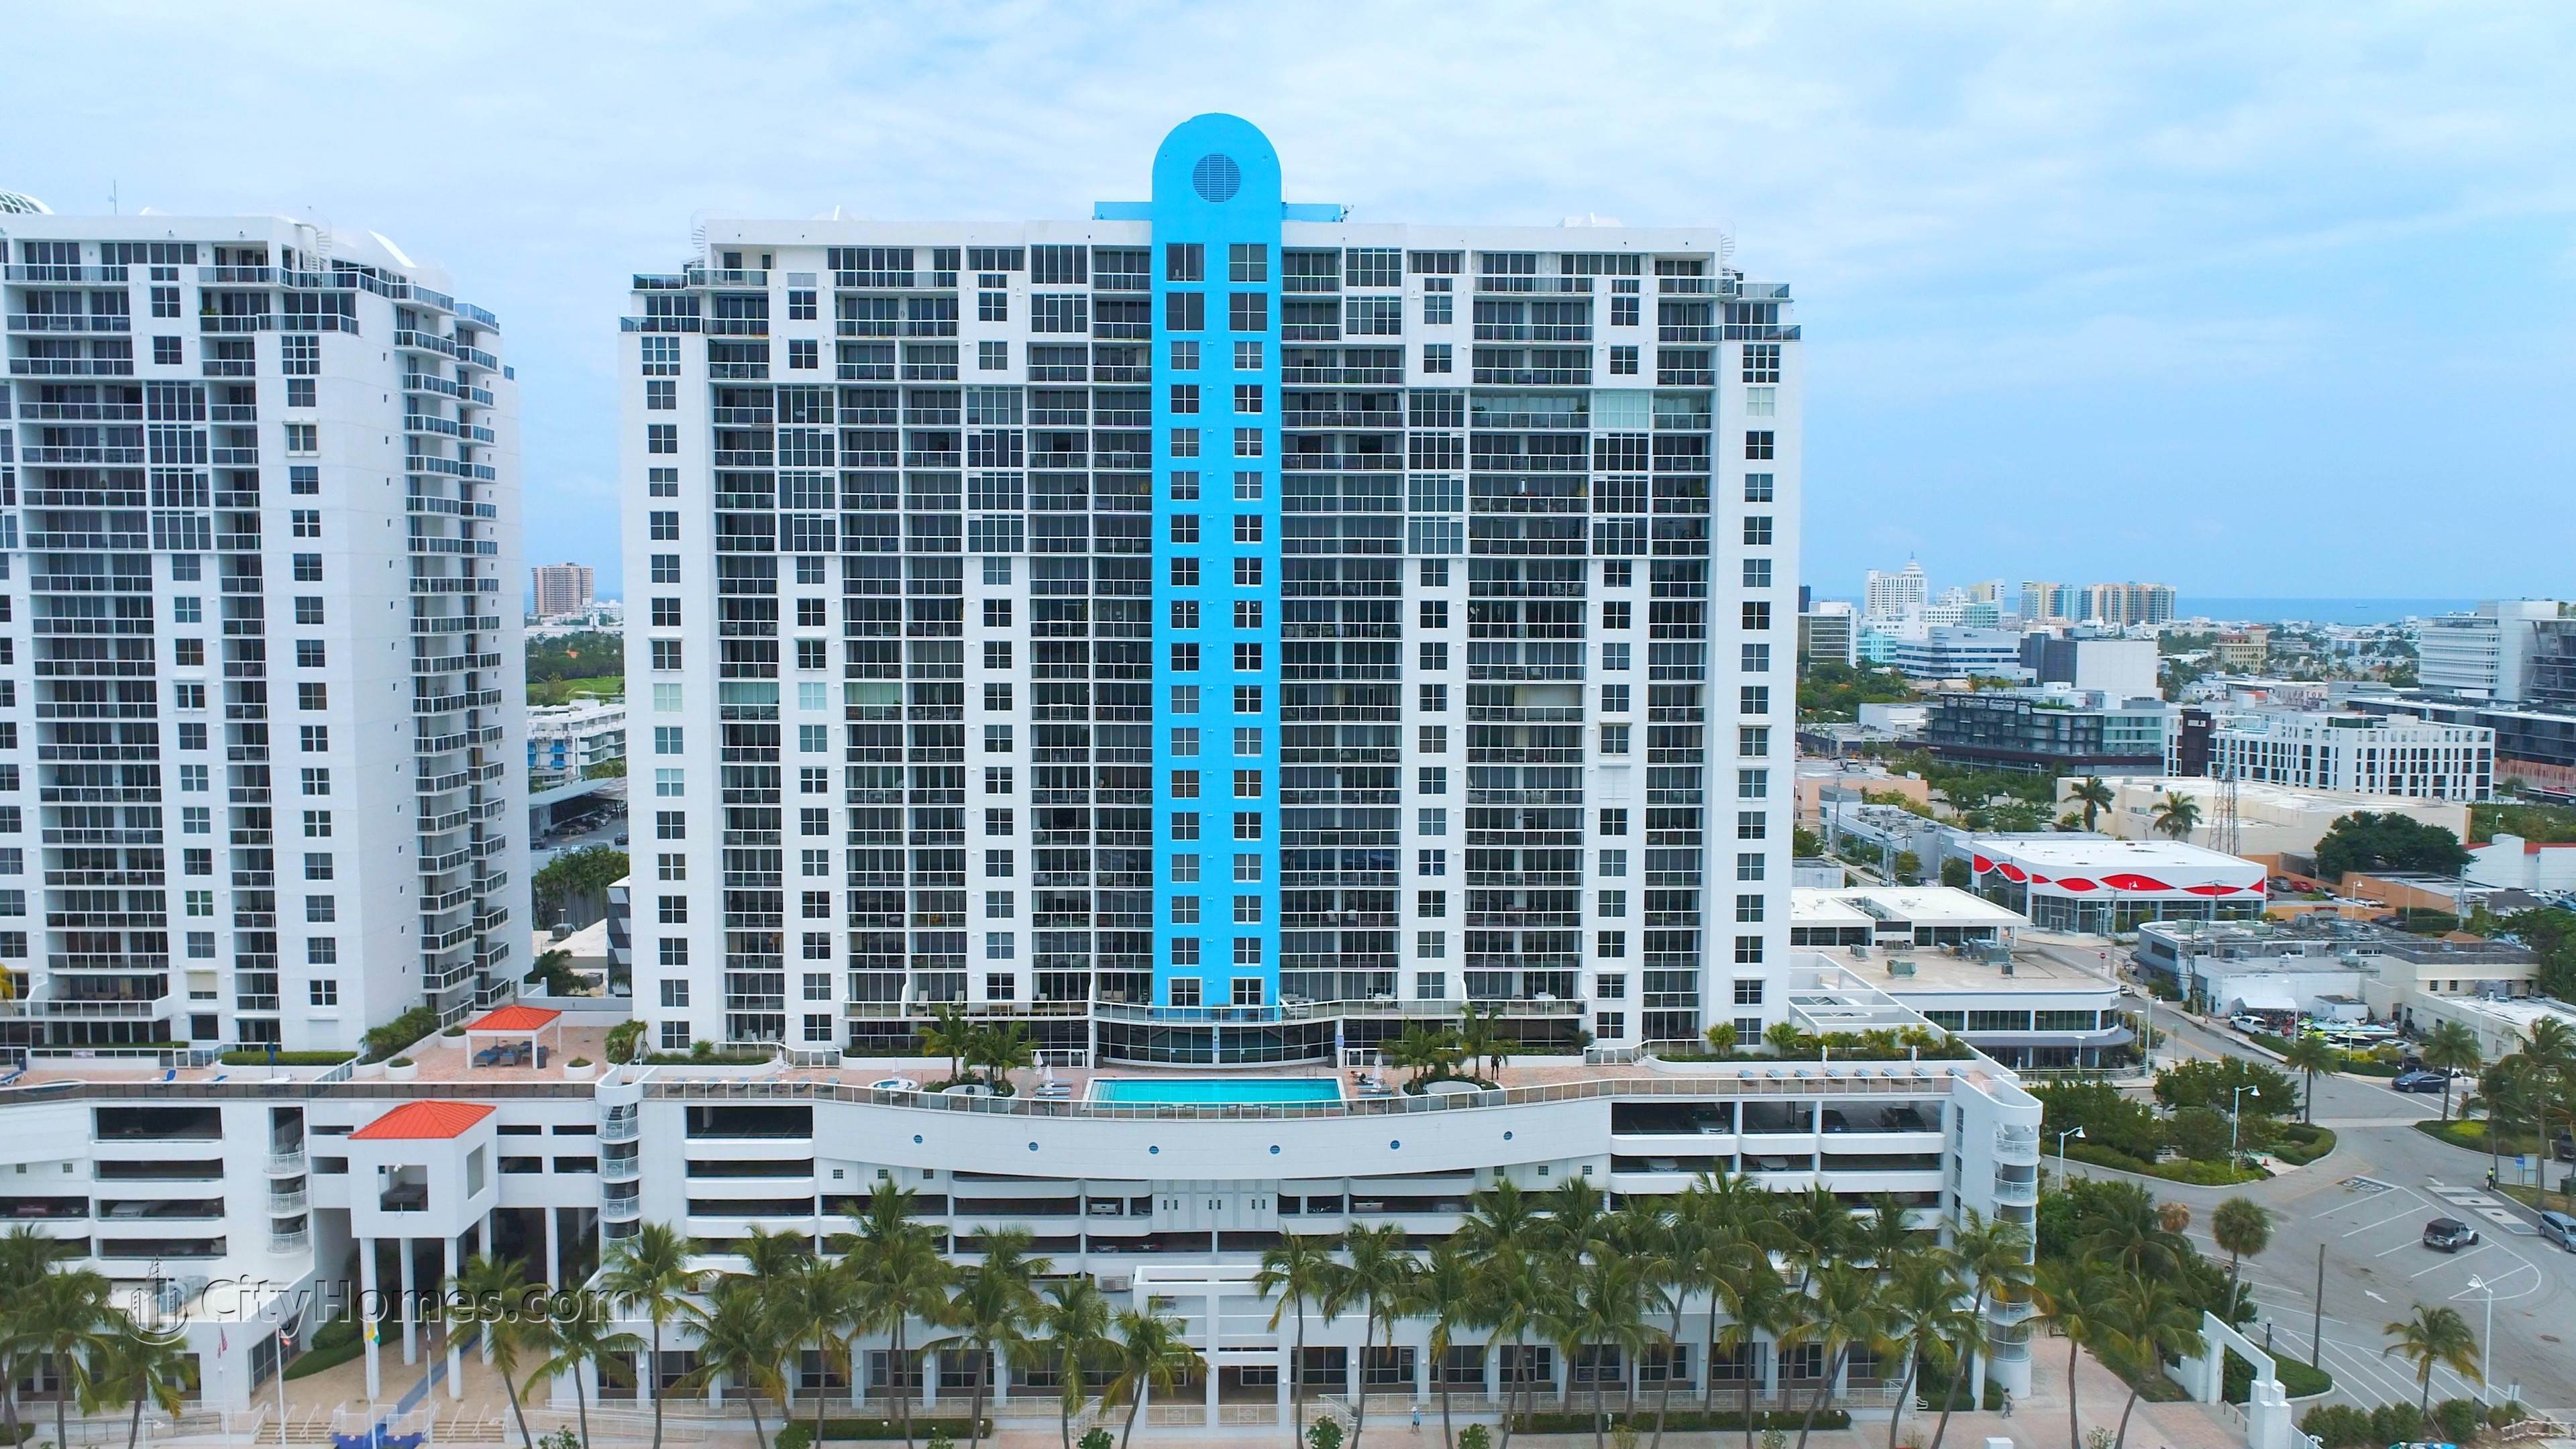 SUNSET HARBOUR SOUTH bâtiment à 1800 Sunset Harbour Drive, Mid Beach, Miami Beach, FL 33139